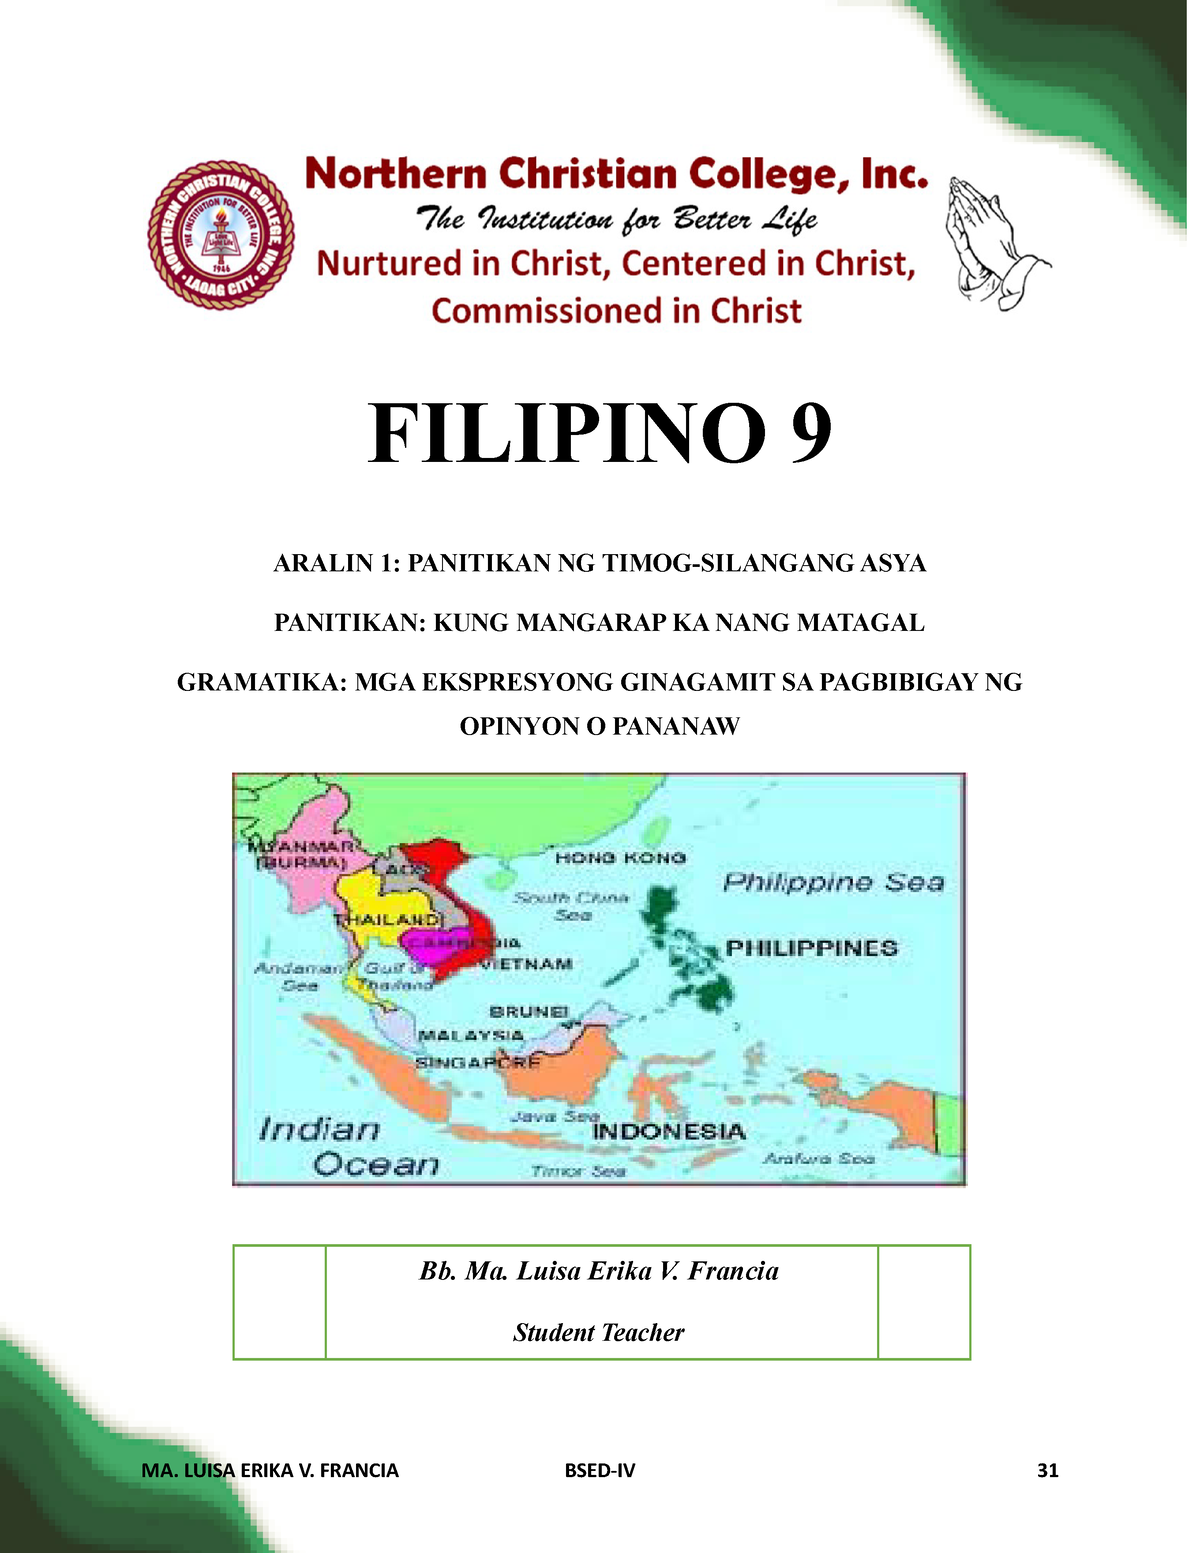 Panitikan sa Filipino 9 (Timog-Silangang Asya) - FILIPINO 9 ARALIN 1